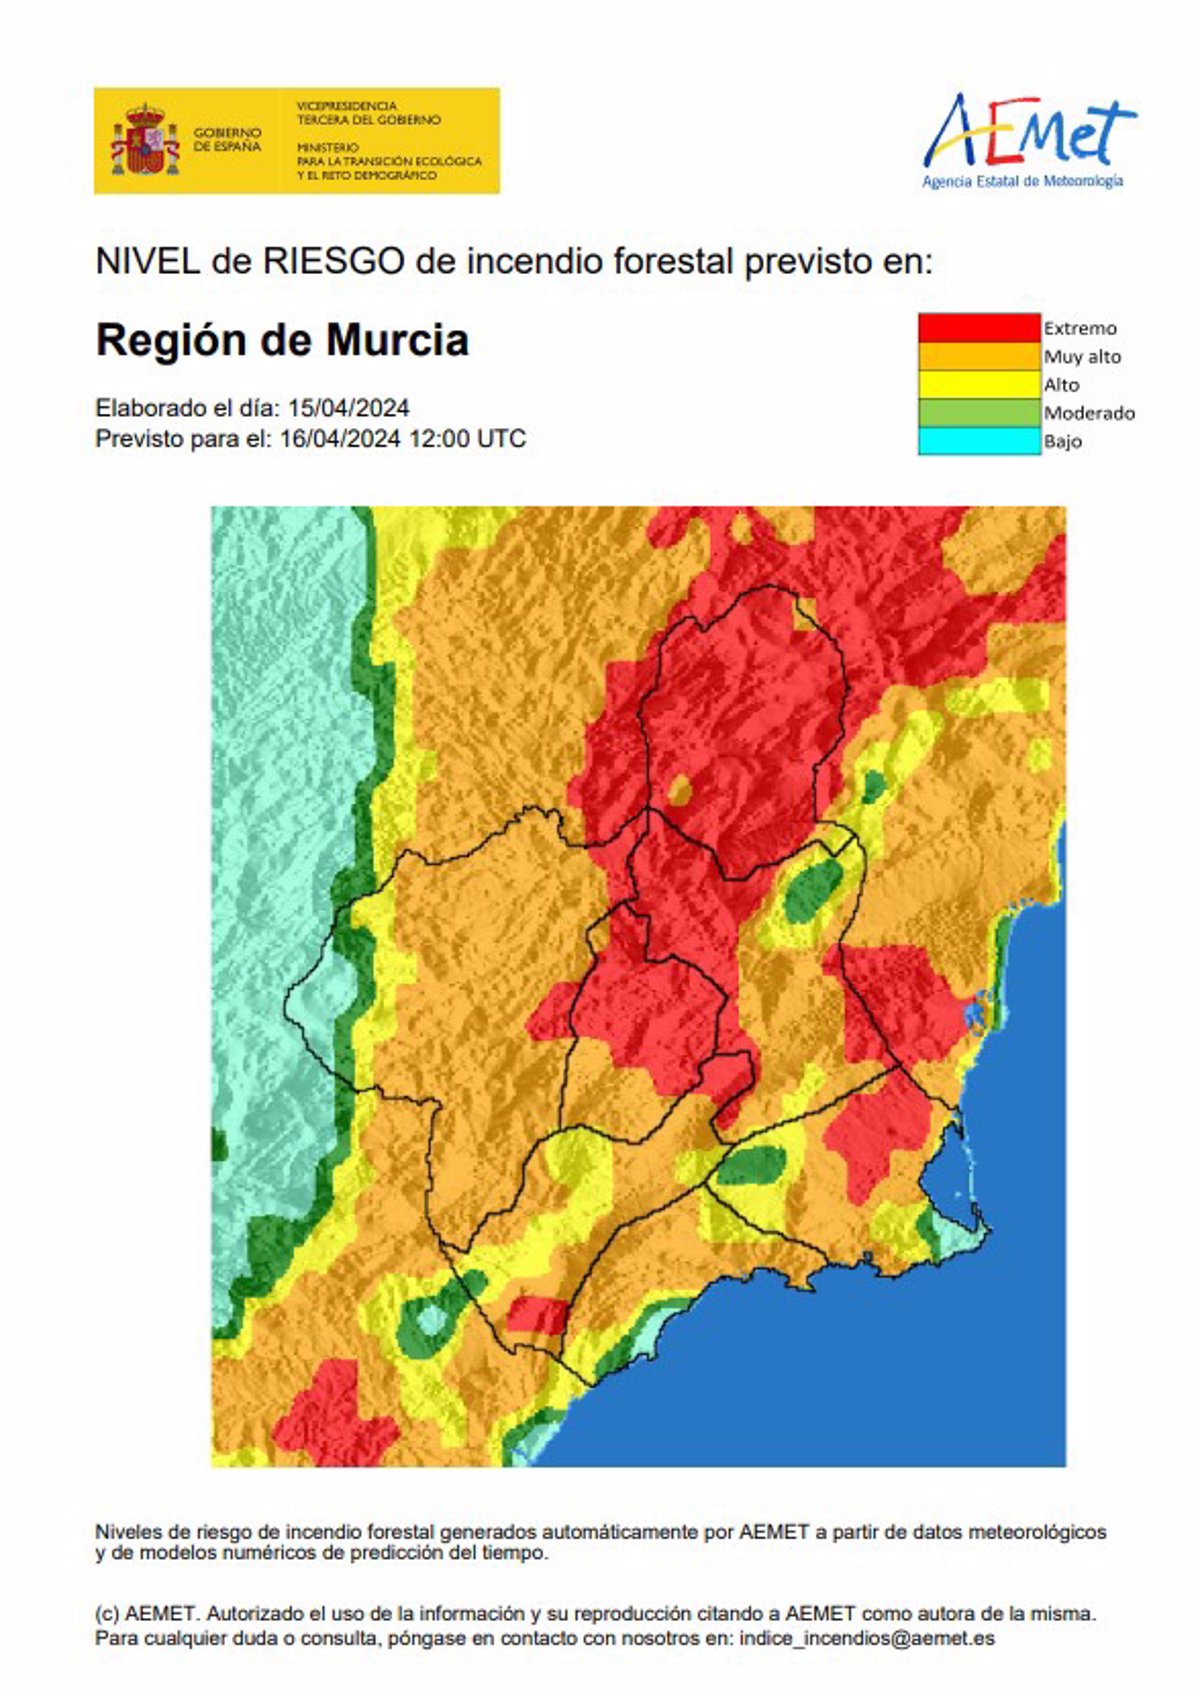 El nivel de riesgo de incendio forestal es extremo o muy alto este martes en la Región de Murcia